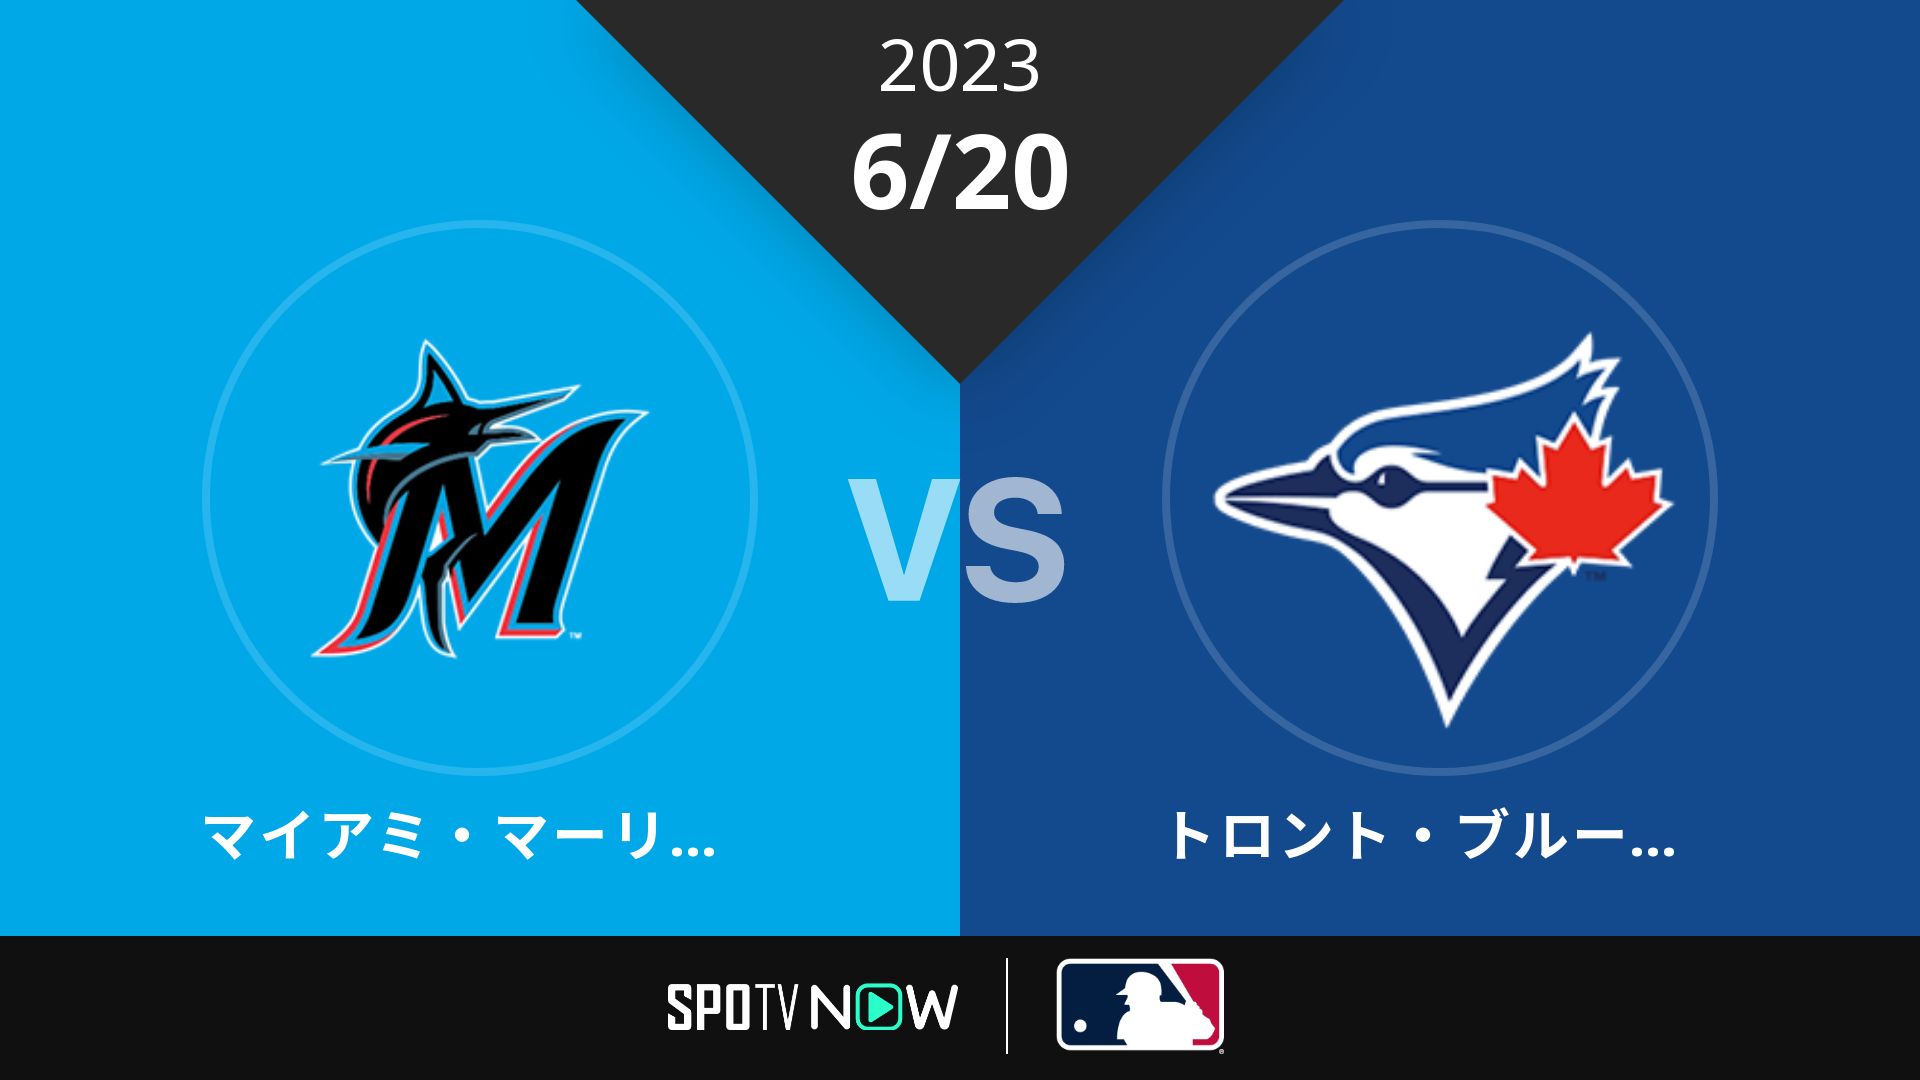 2023/6/20 マーリンズ vs ブルージェイズ [MLB]